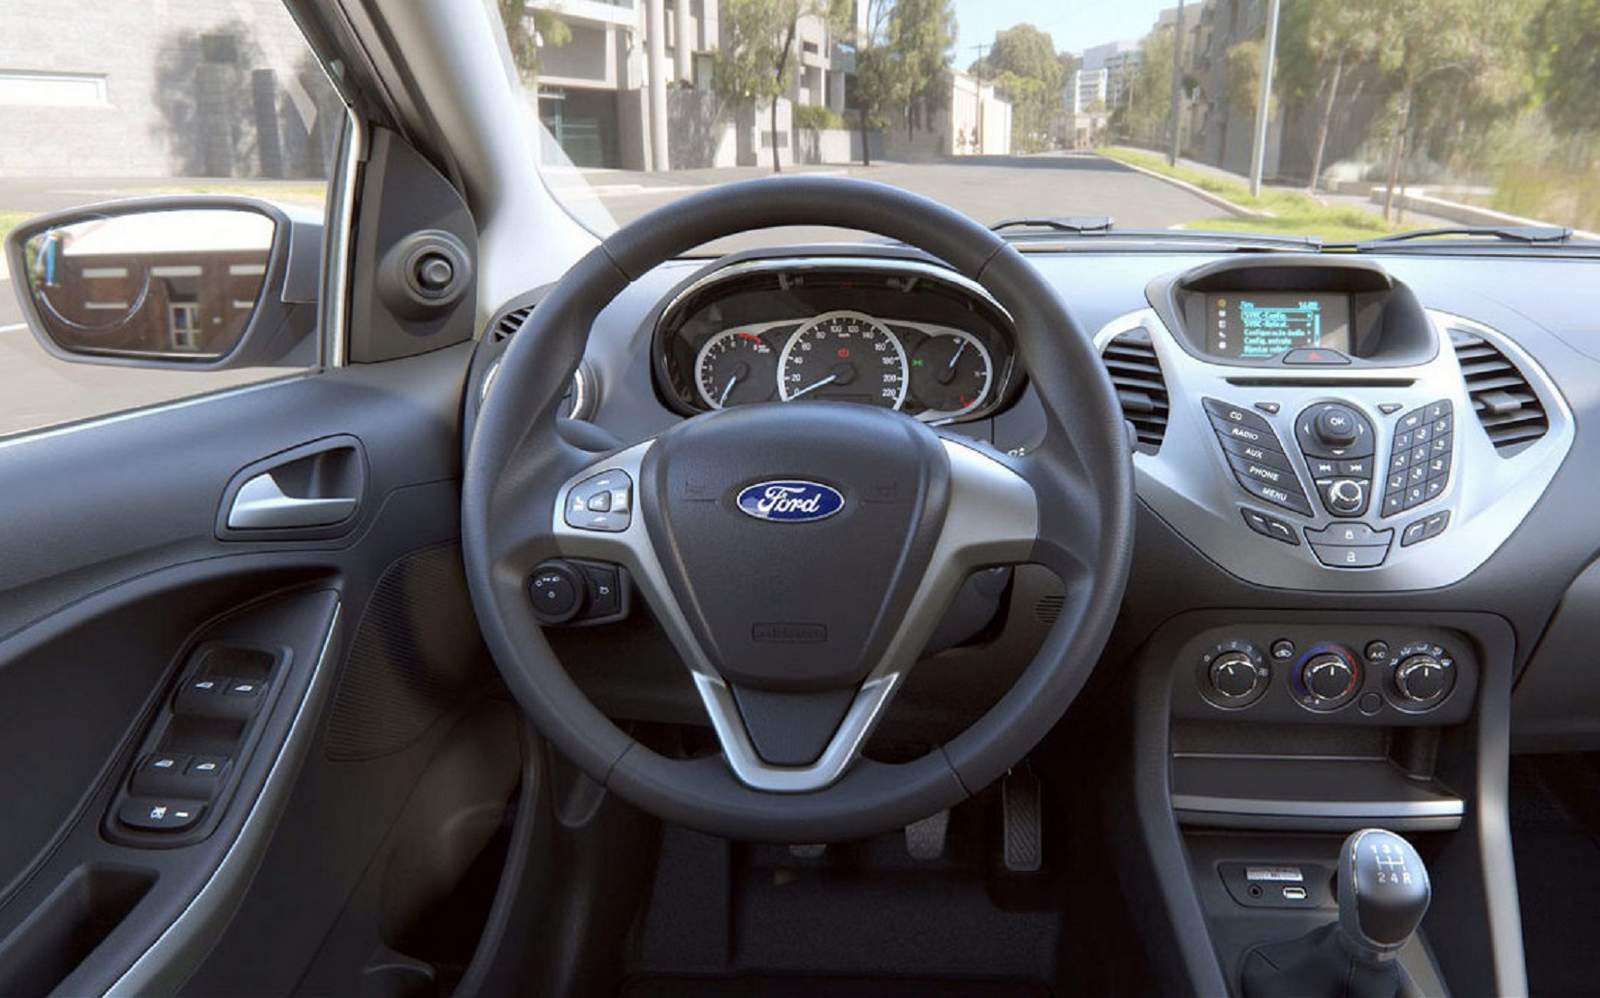 Novo Ford Ka x Volkswagen up! - interior